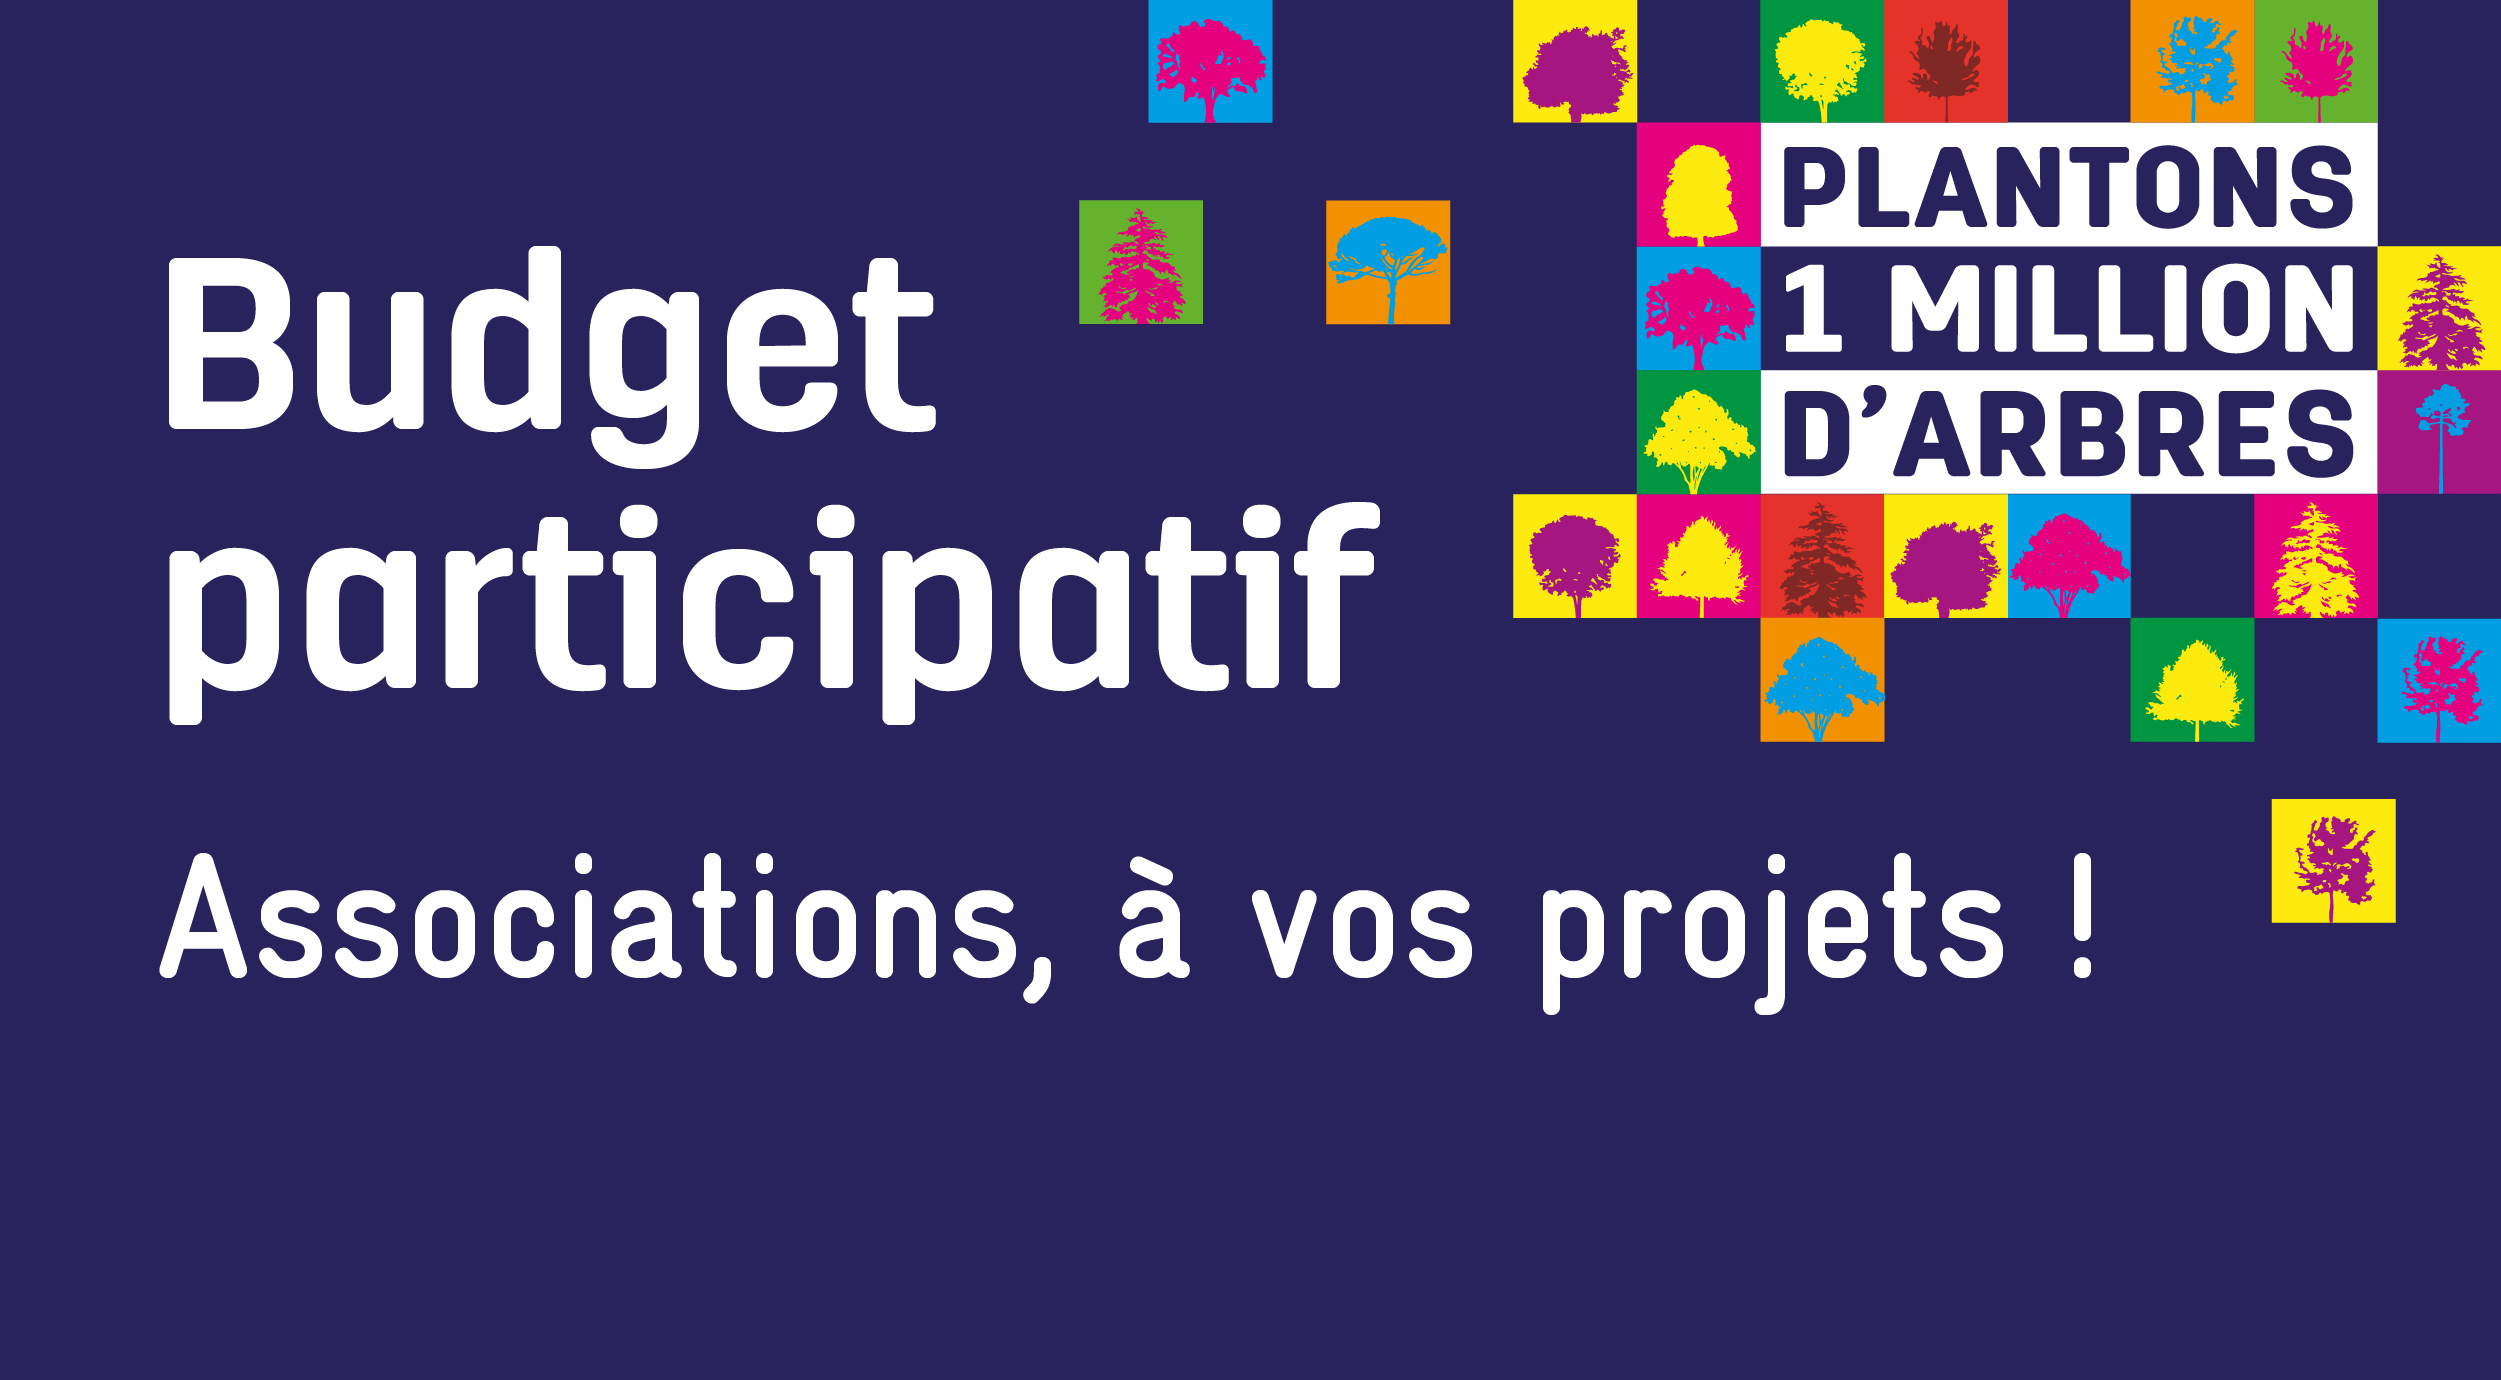 ordeaux Métropole lance son premier budget participatif #1milliondarbres